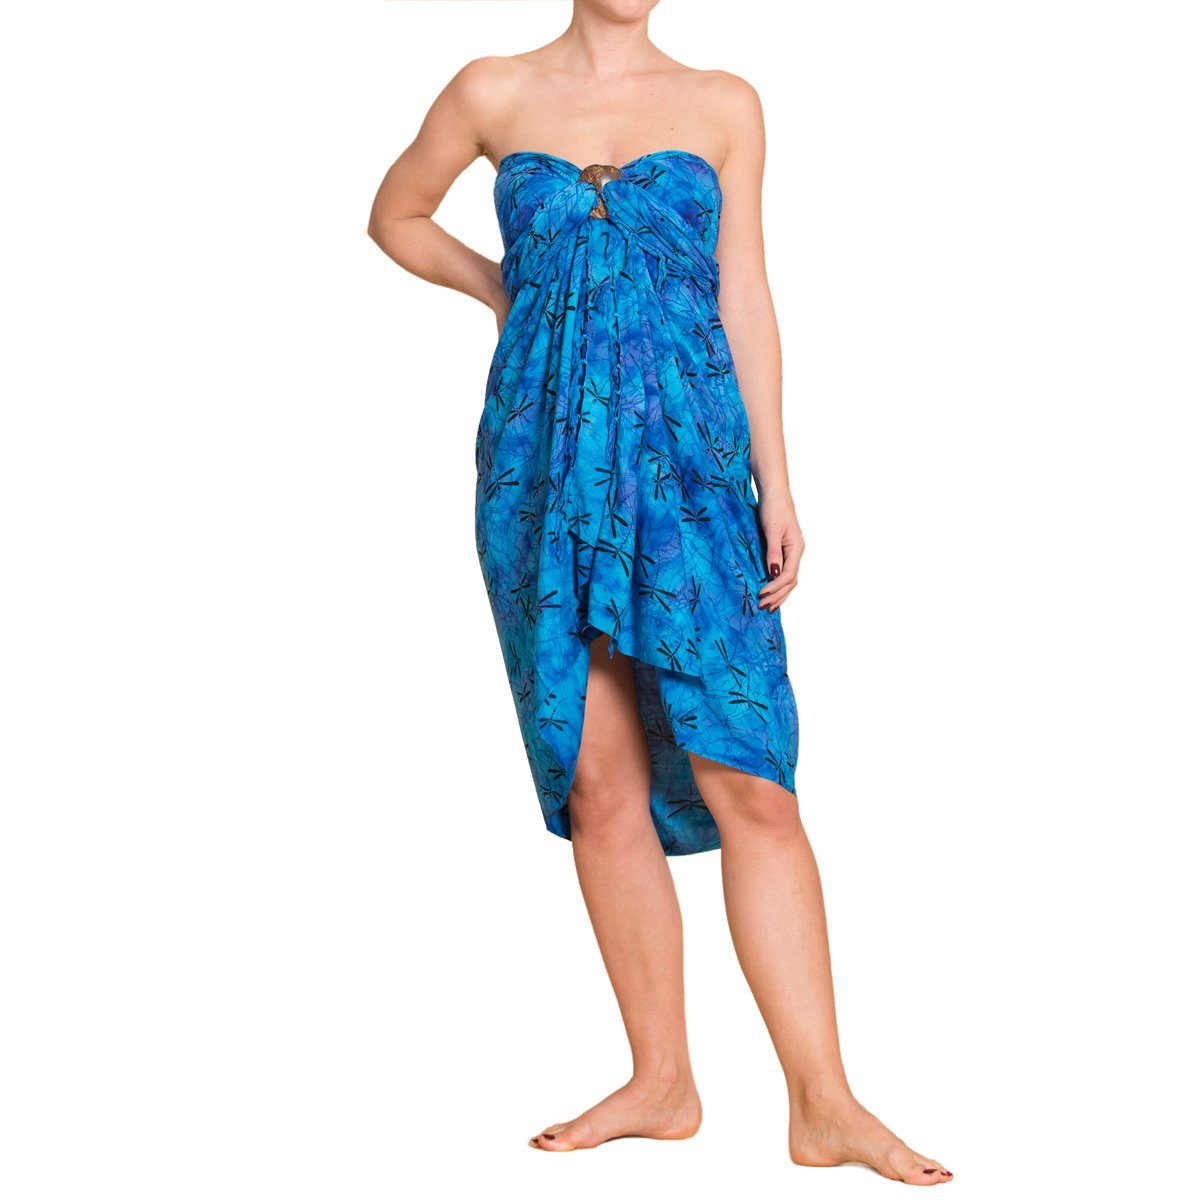 PANASIAM Pareo Sarong Wachsbatik Blautöne aus hochwertiger Viskose Strandtuch, Strandkleid Bikini Cover-up Tuch für den Strand Schultertuch Halstuch